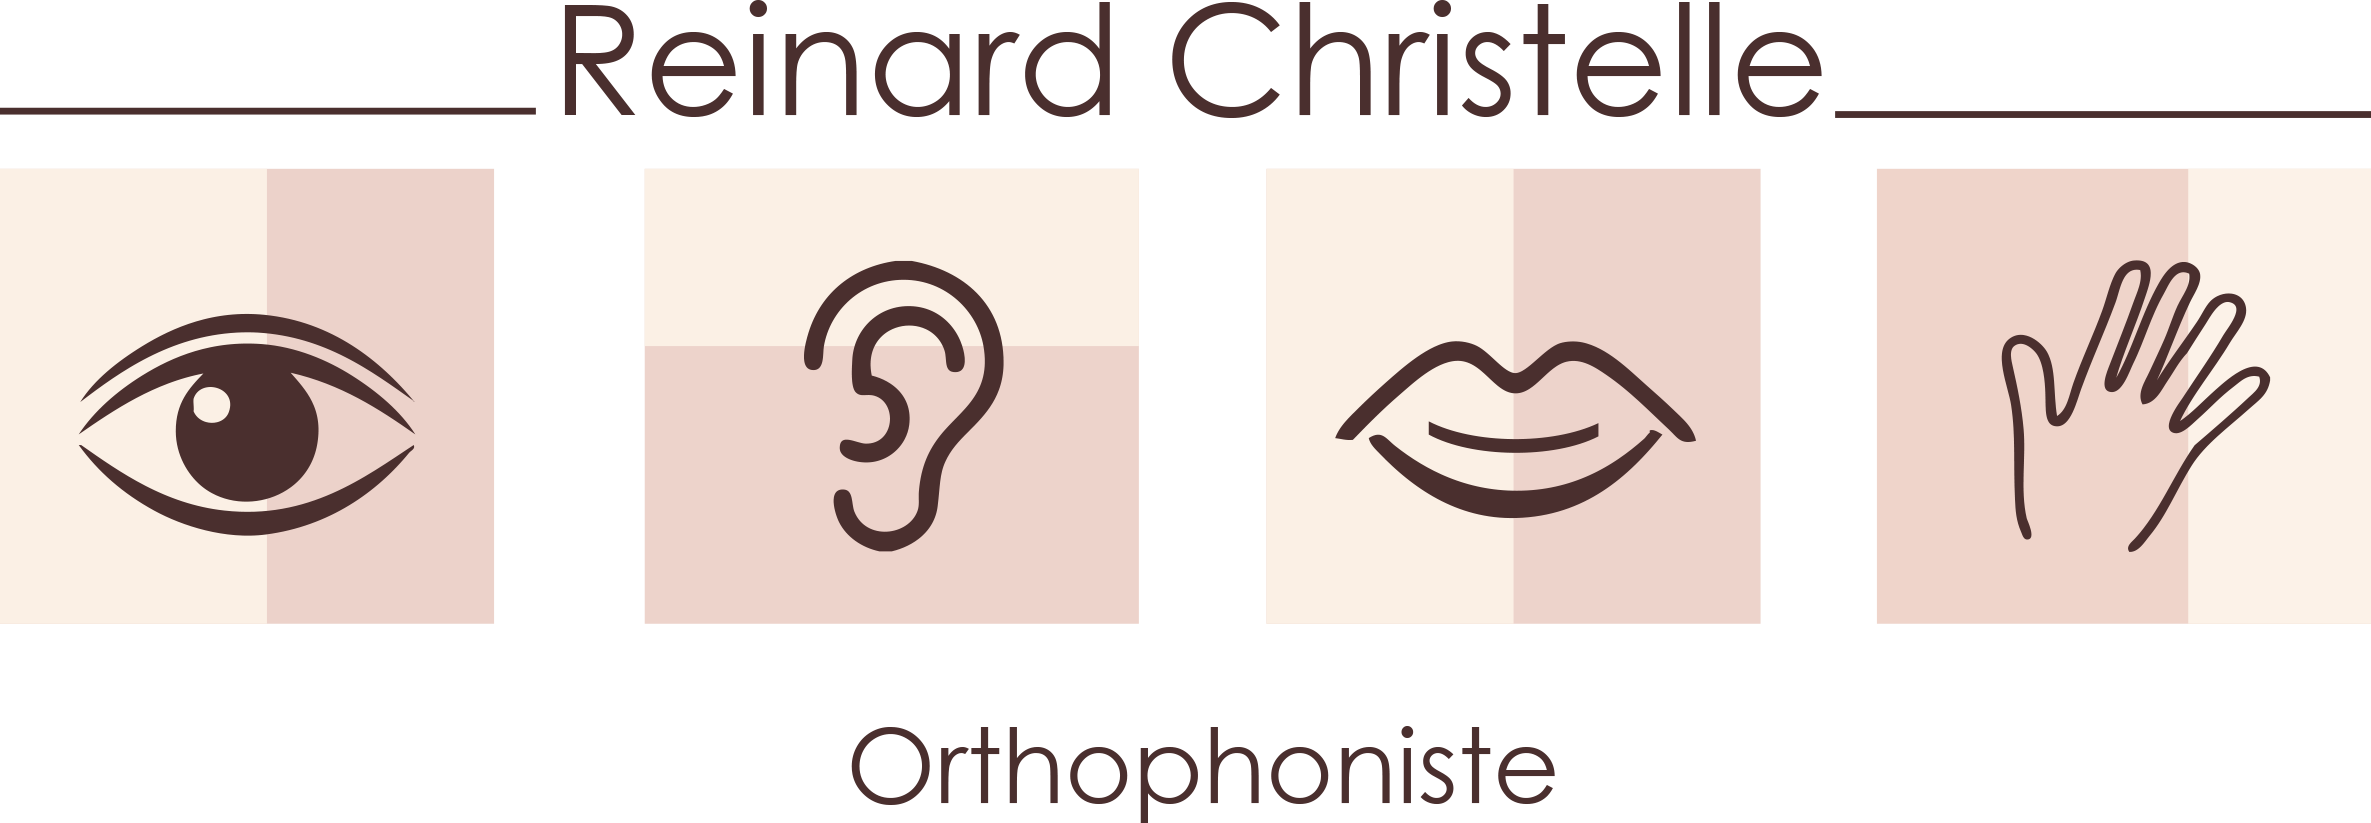 Reinard Christelle Logo